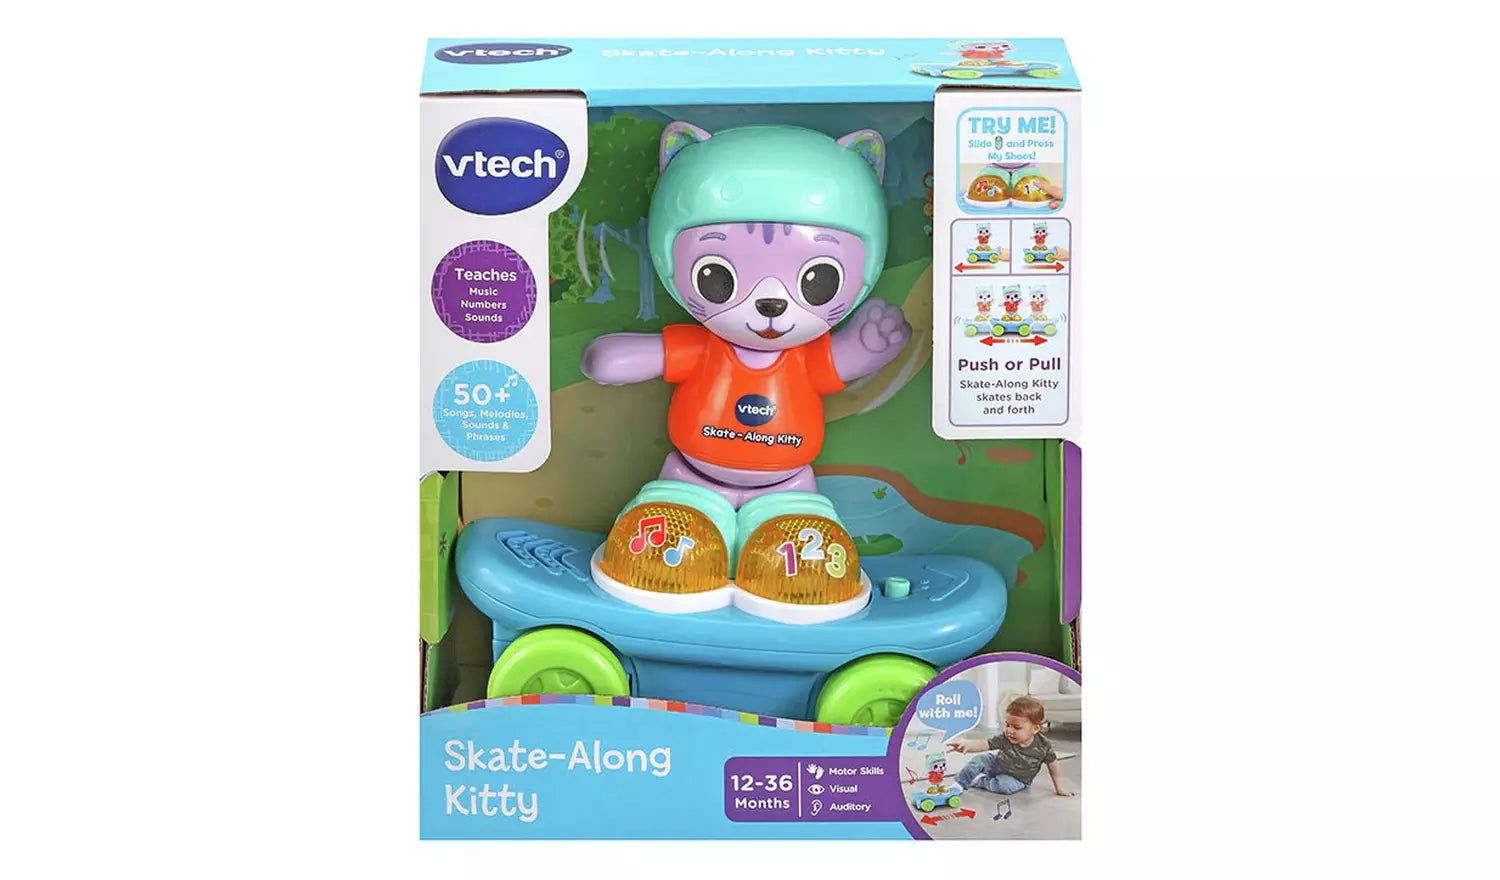 Vtech - Skate-Along Kitty